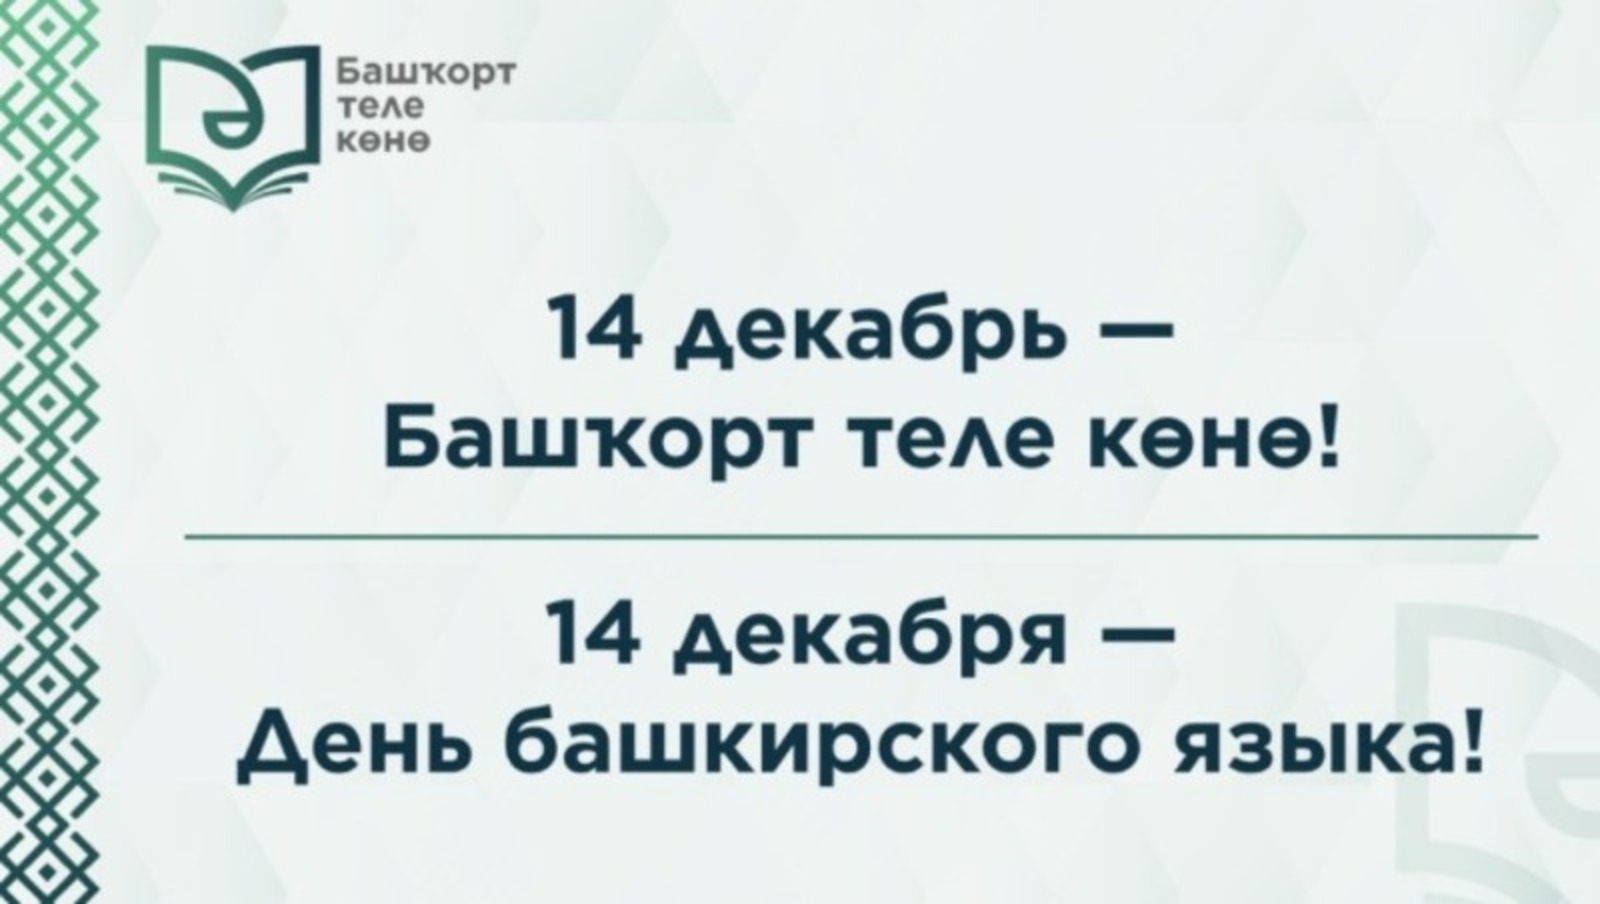 День башкирского языка: как в Башкортостане и регионах России отмечают этот праздник